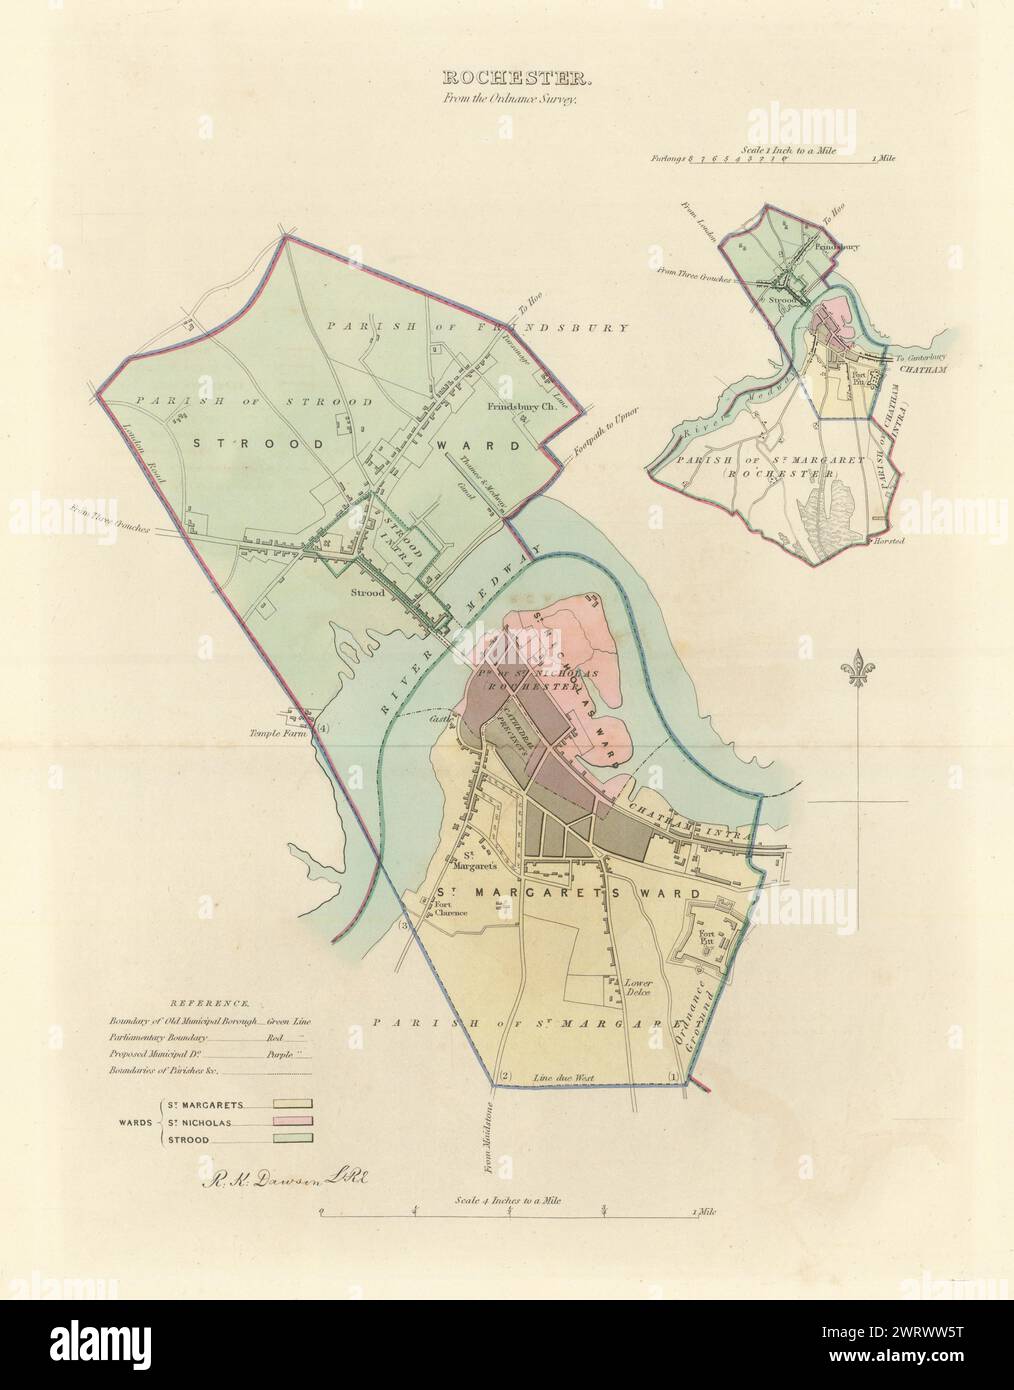 ROCHESTER Gemeinde/Stadt planen. Grenzkommission. Strood Kent. DAWSON 1837 Karte Stockfoto